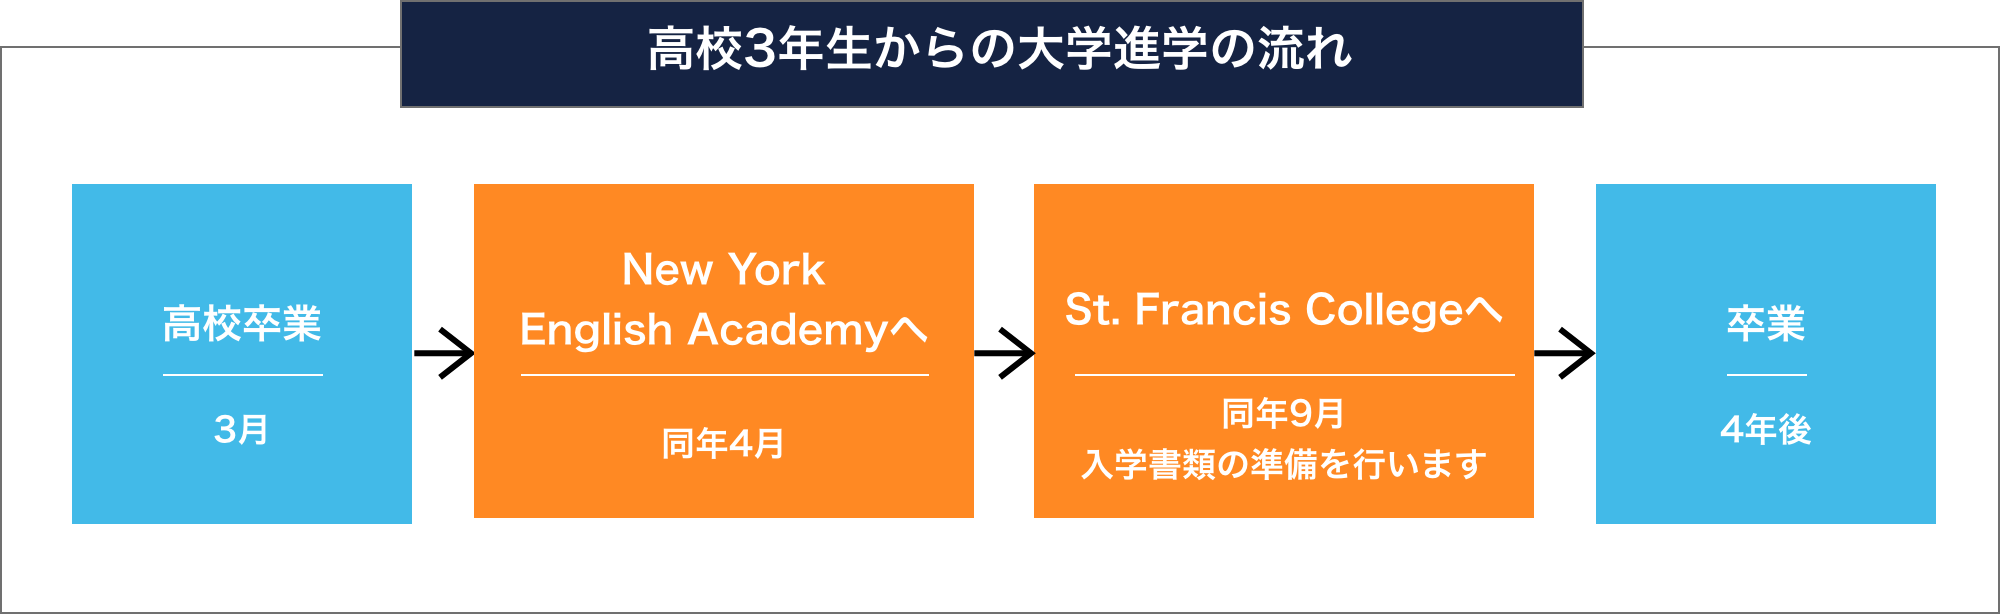 高校3年生からの大学進学の流れ 高校卒業 3月 New York
English Academyへ 同年4月 St. Francis Collegeへ 同年9月
入学書類の準備を行います 卒業 4年後